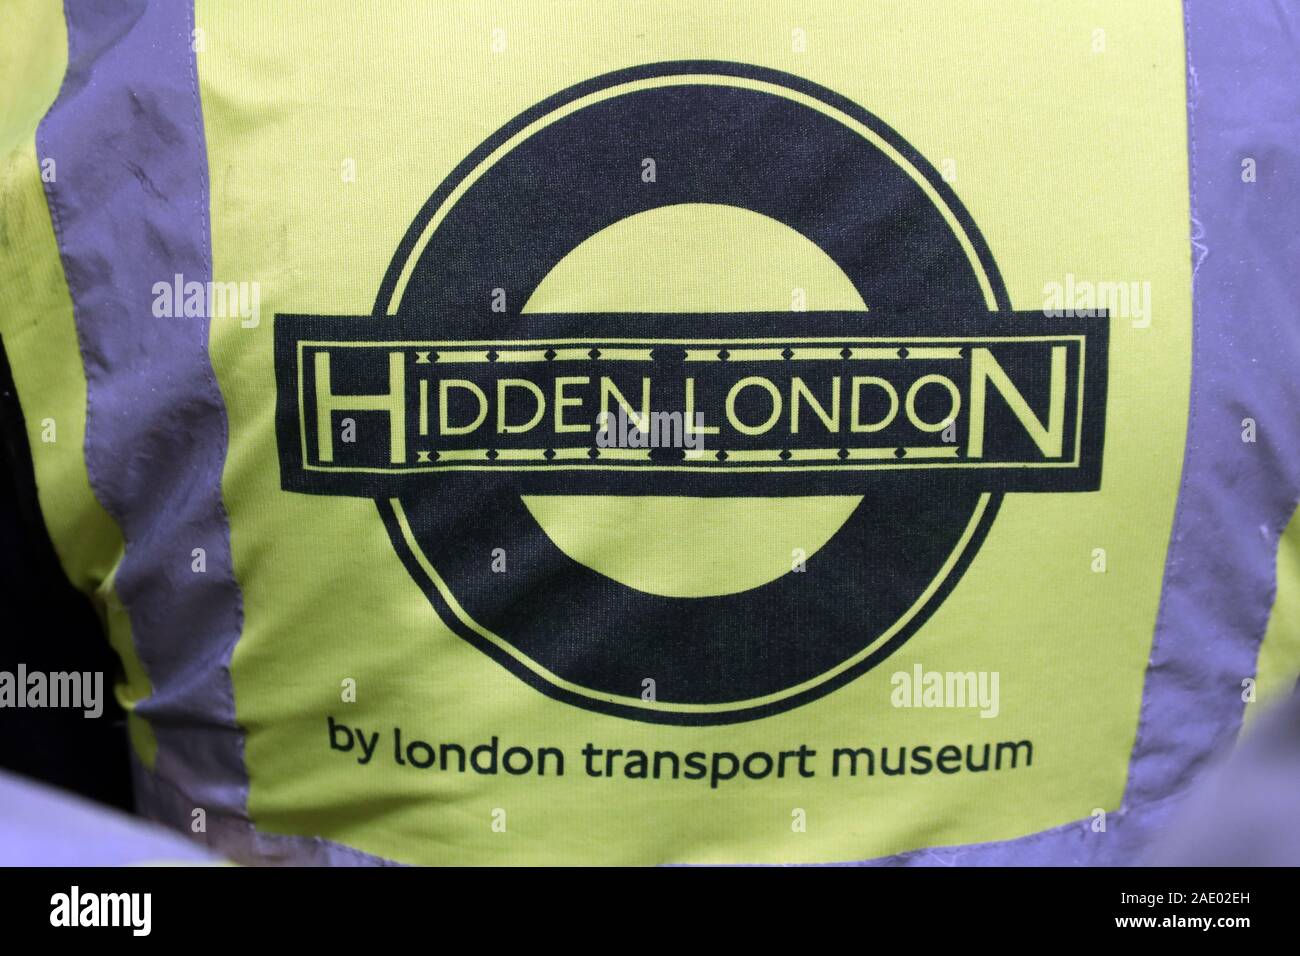 Hidden London Guide, près du London transport Museum, lors d'une visite, station de métro Piccadilly Circus, West End, Londres, Angleterre, Royaume-Uni Banque D'Images